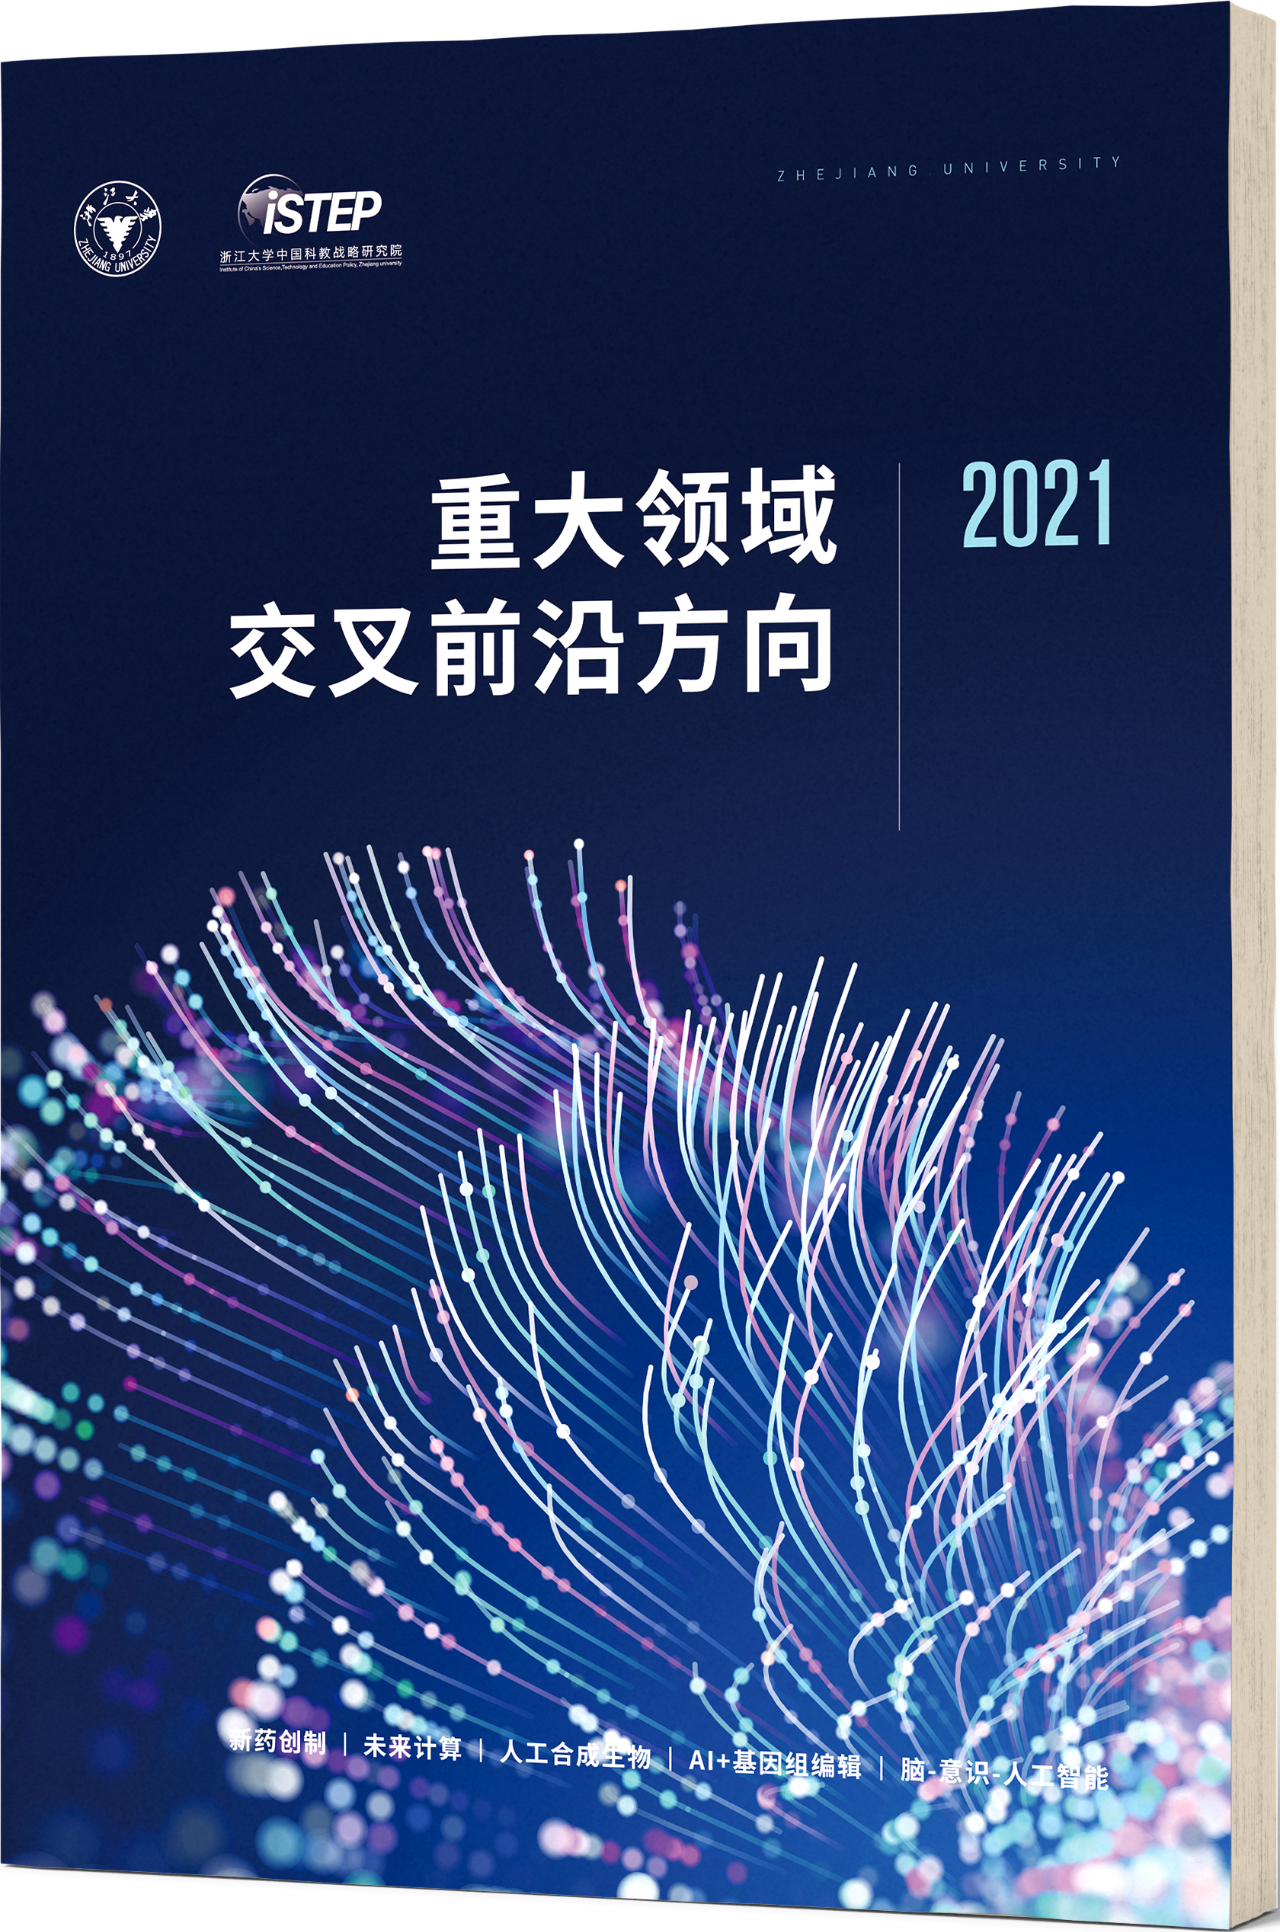 浙江大学发布《重大领域交叉前沿方向2021》报告